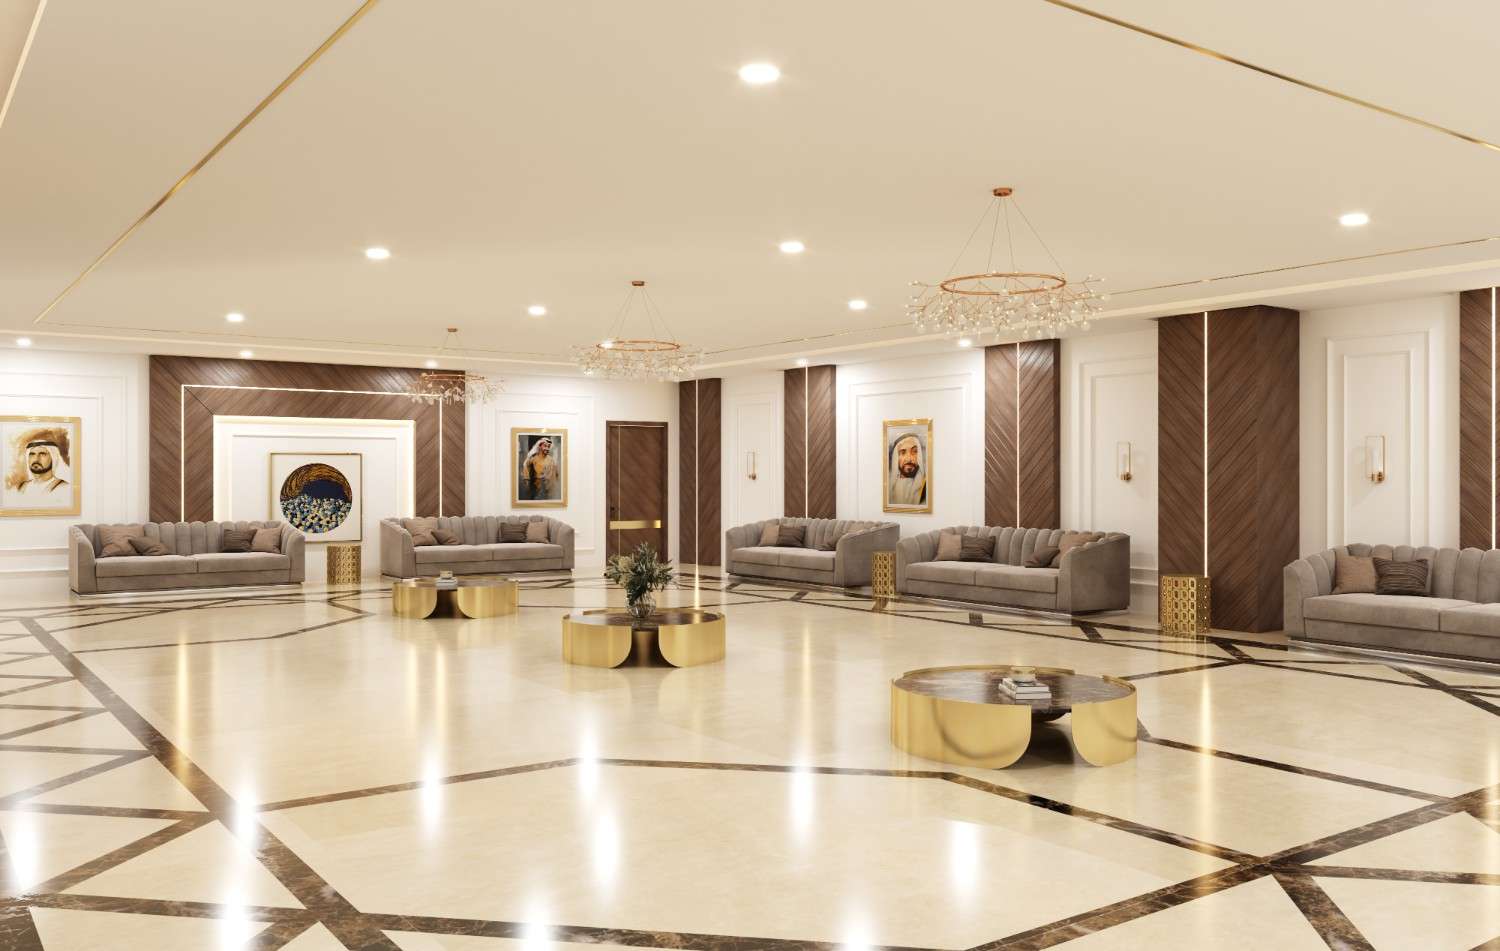 Interior Design Companies in Dubai